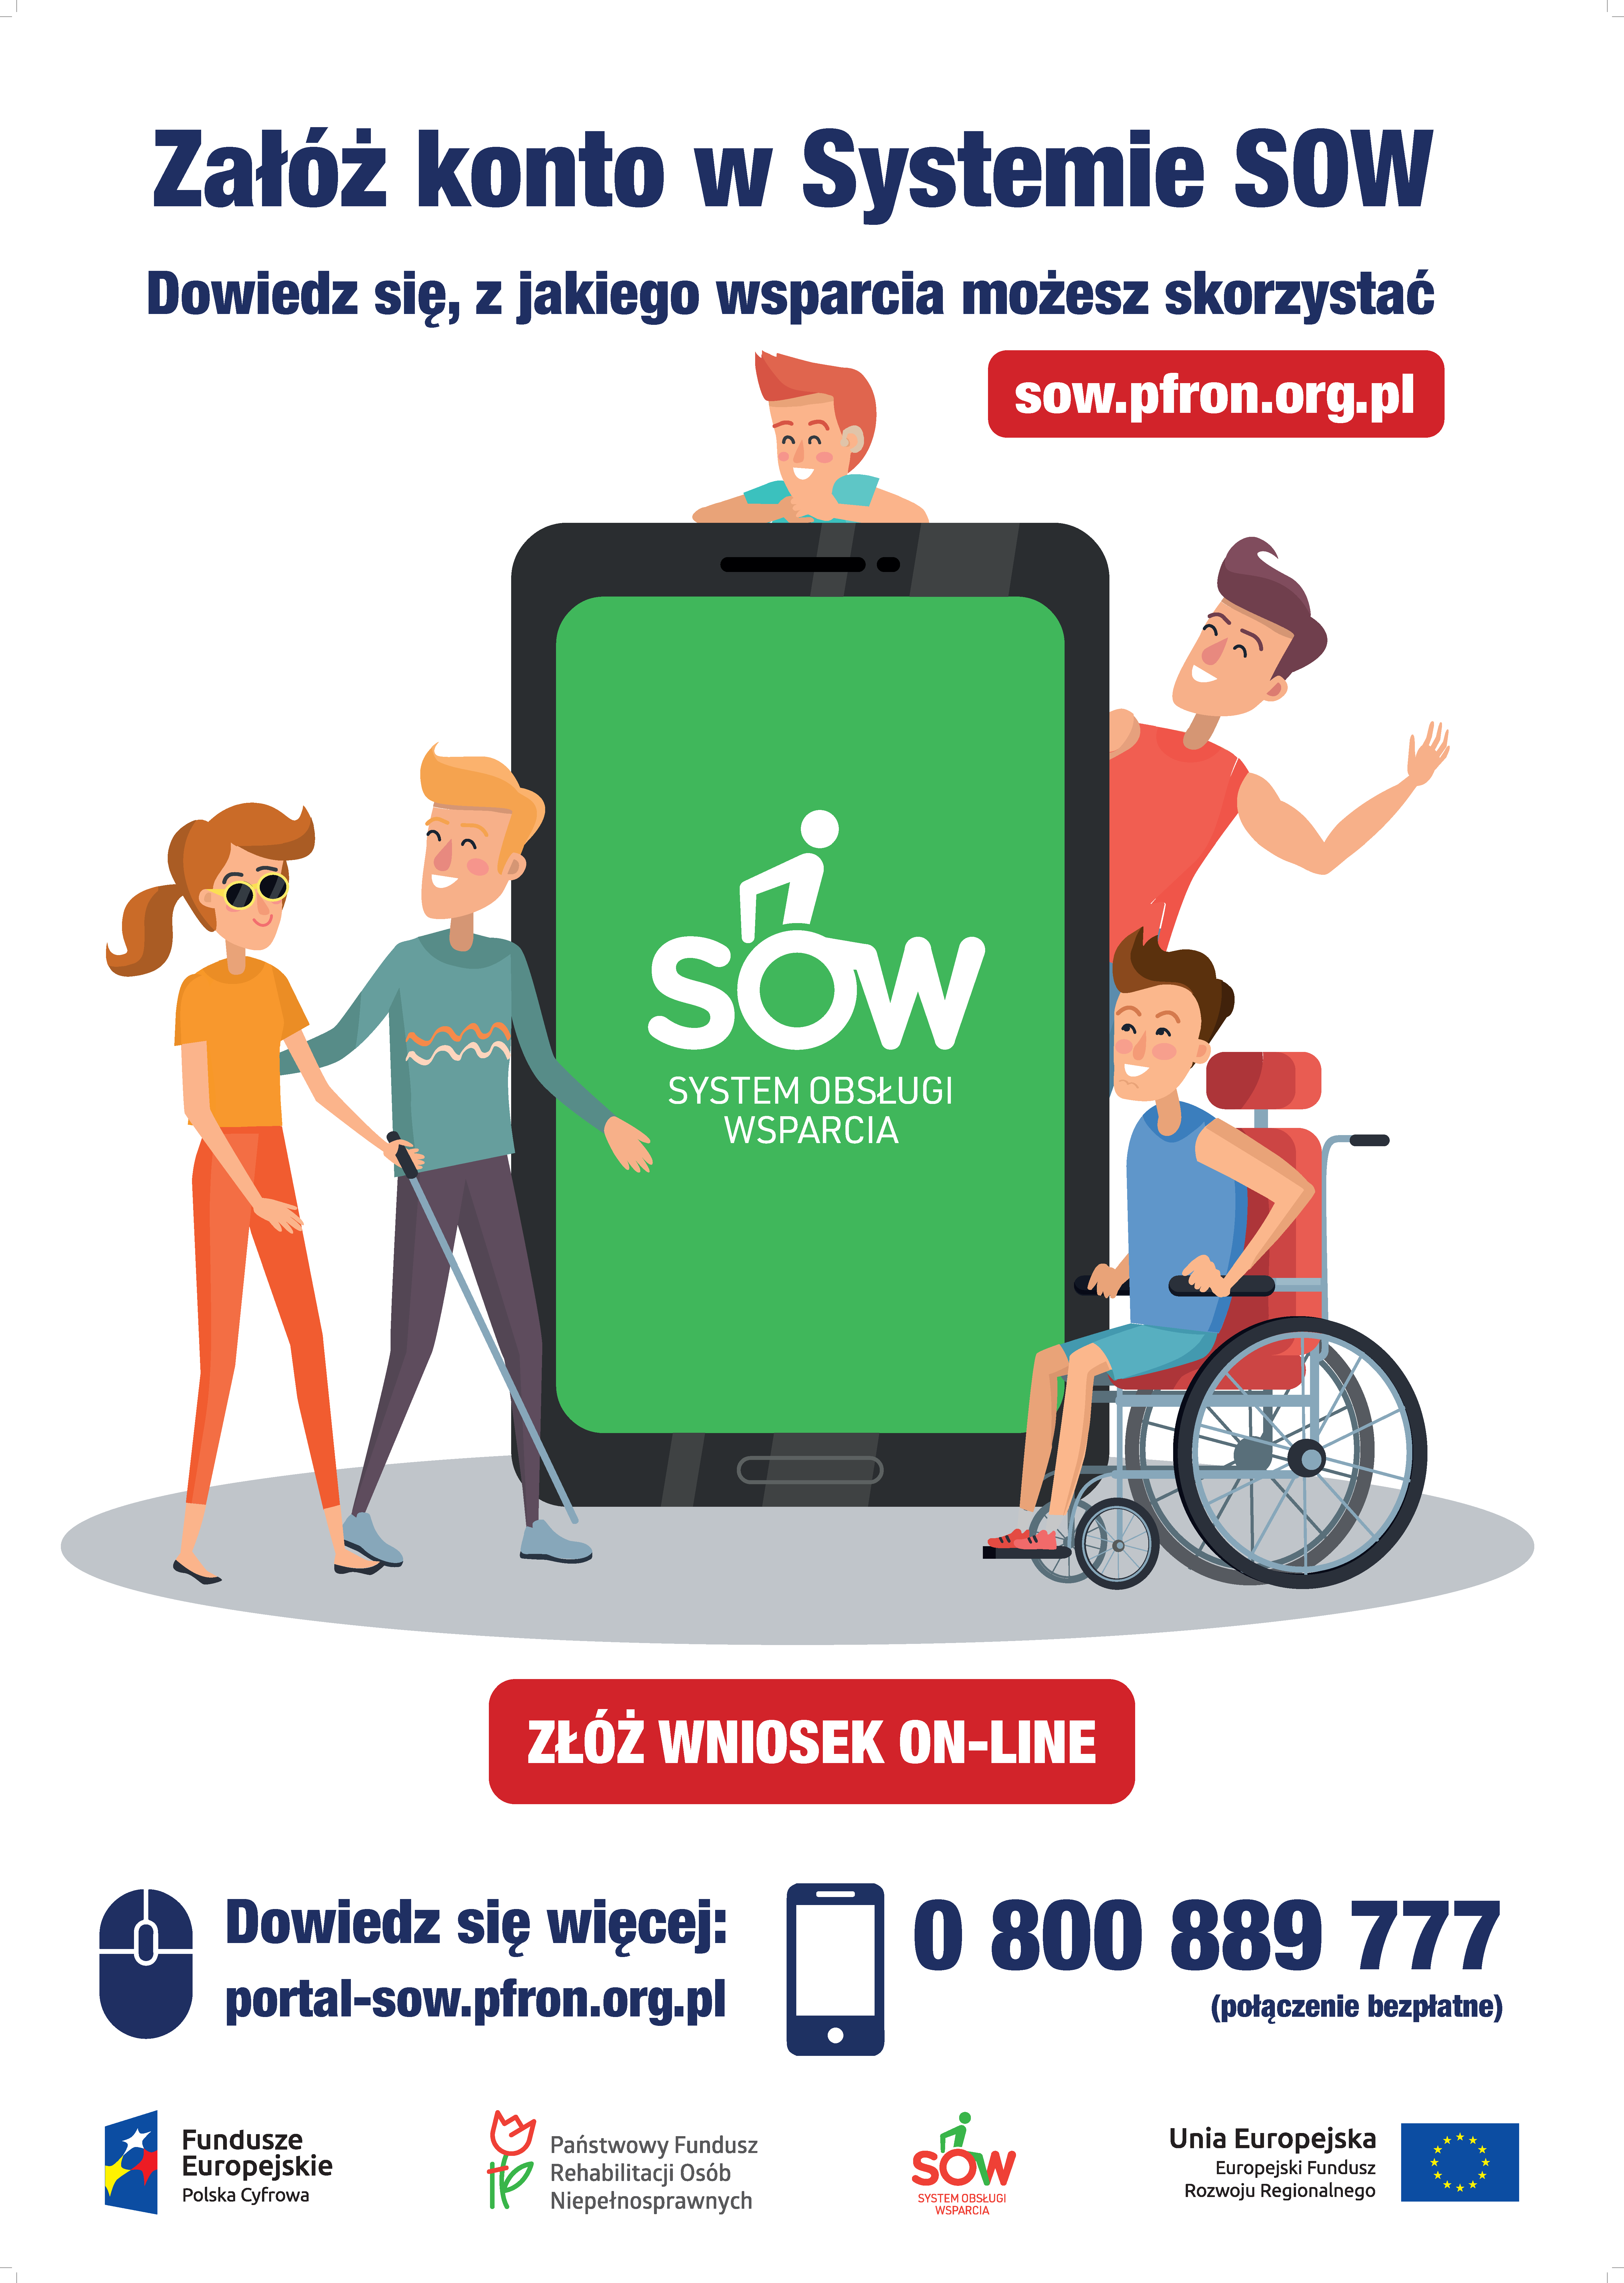 Obrazek przedstawia plakat Systemu Obsługi Wsparcia. Na środku plakatu znajduje się urządzenie mobilne wyświetlające białe logo SOW na zielonym tle. Przy urządzeniu znajdują się osoby przedstawiające różne rodzaje niepełnosprawności.